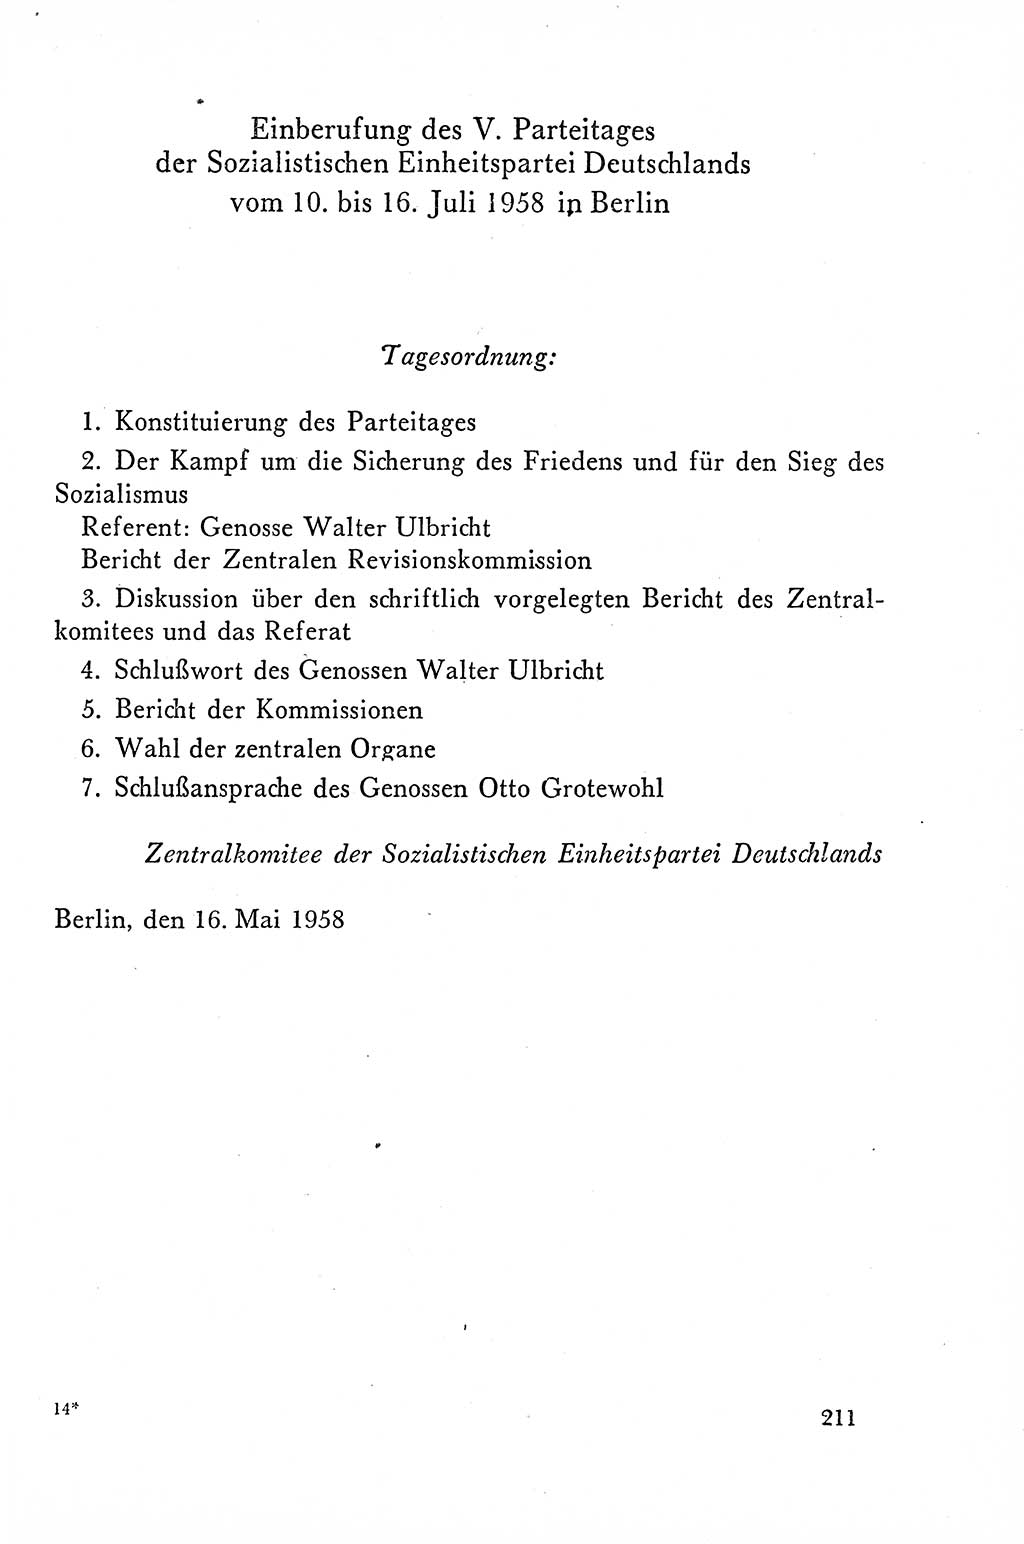 Dokumente der Sozialistischen Einheitspartei Deutschlands (SED) [Deutsche Demokratische Republik (DDR)] 1958-1959, Seite 211 (Dok. SED DDR 1958-1959, S. 211)